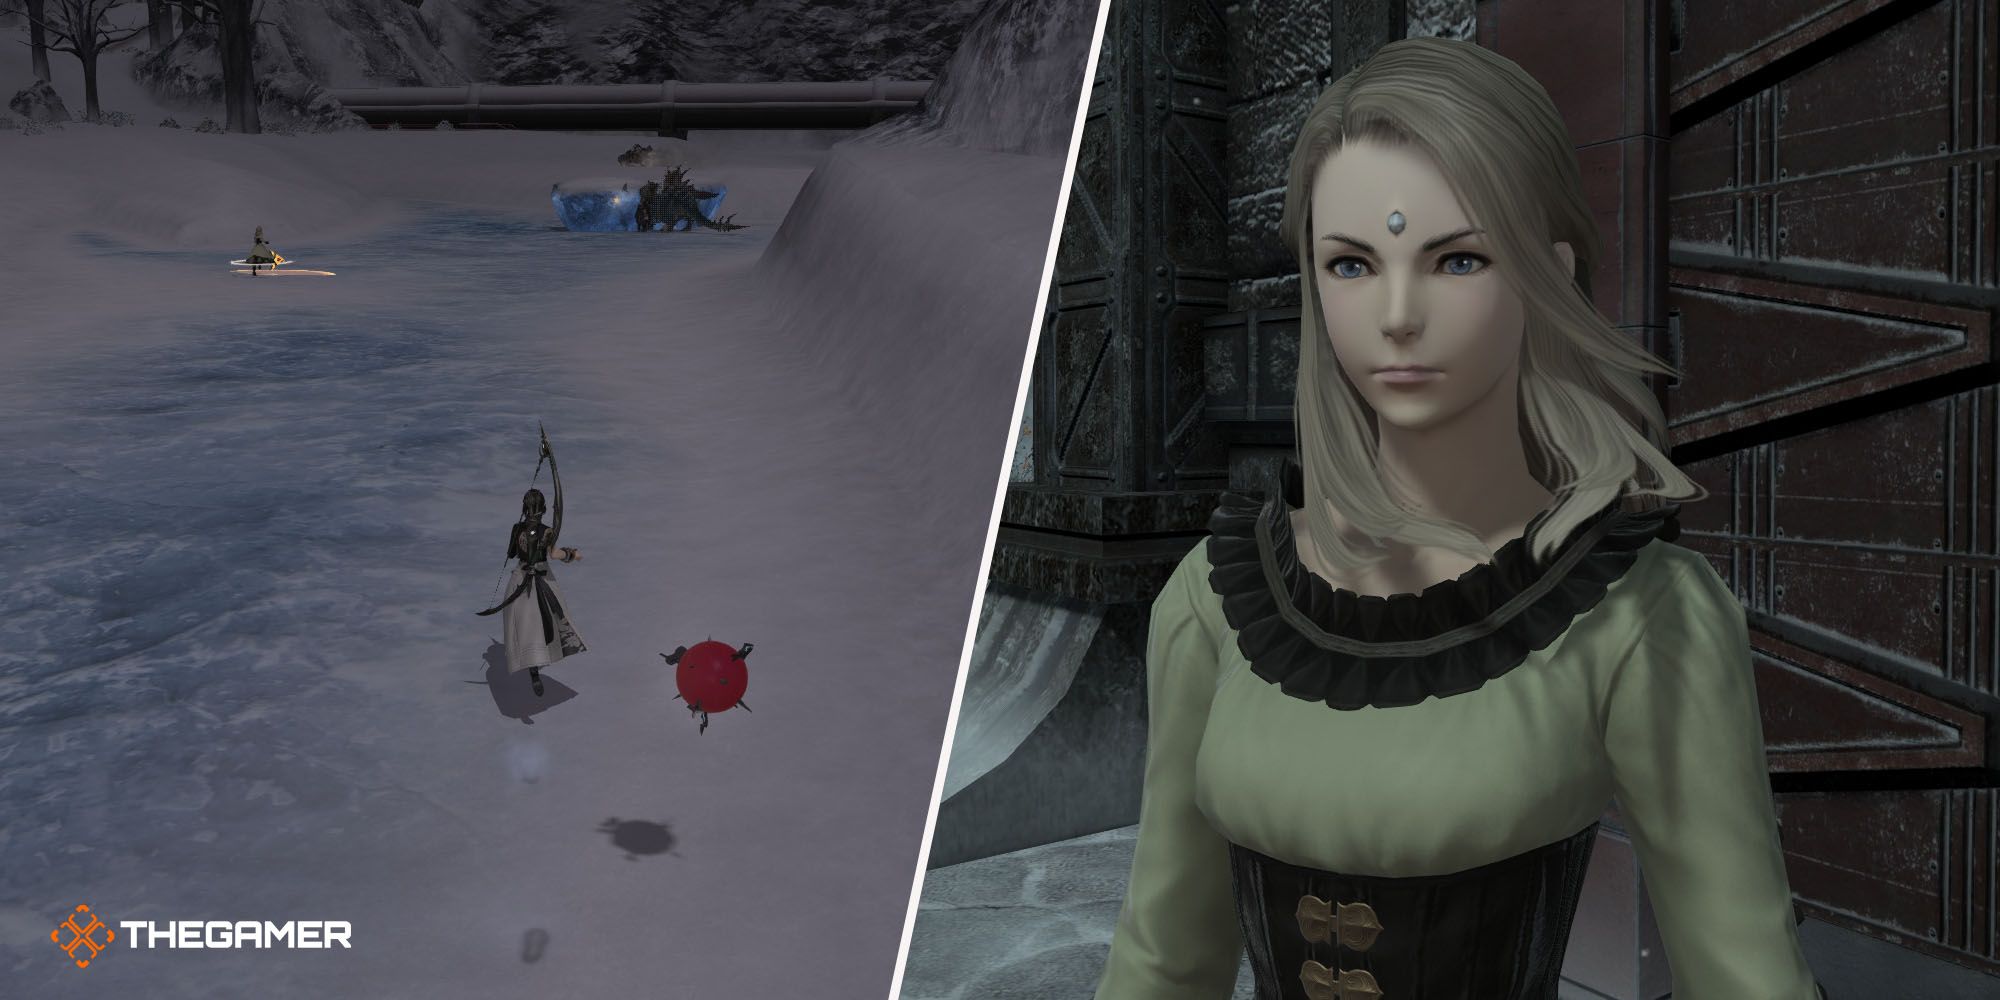 Final Fantasy 14 Endwalker Tracks in the Snow collage